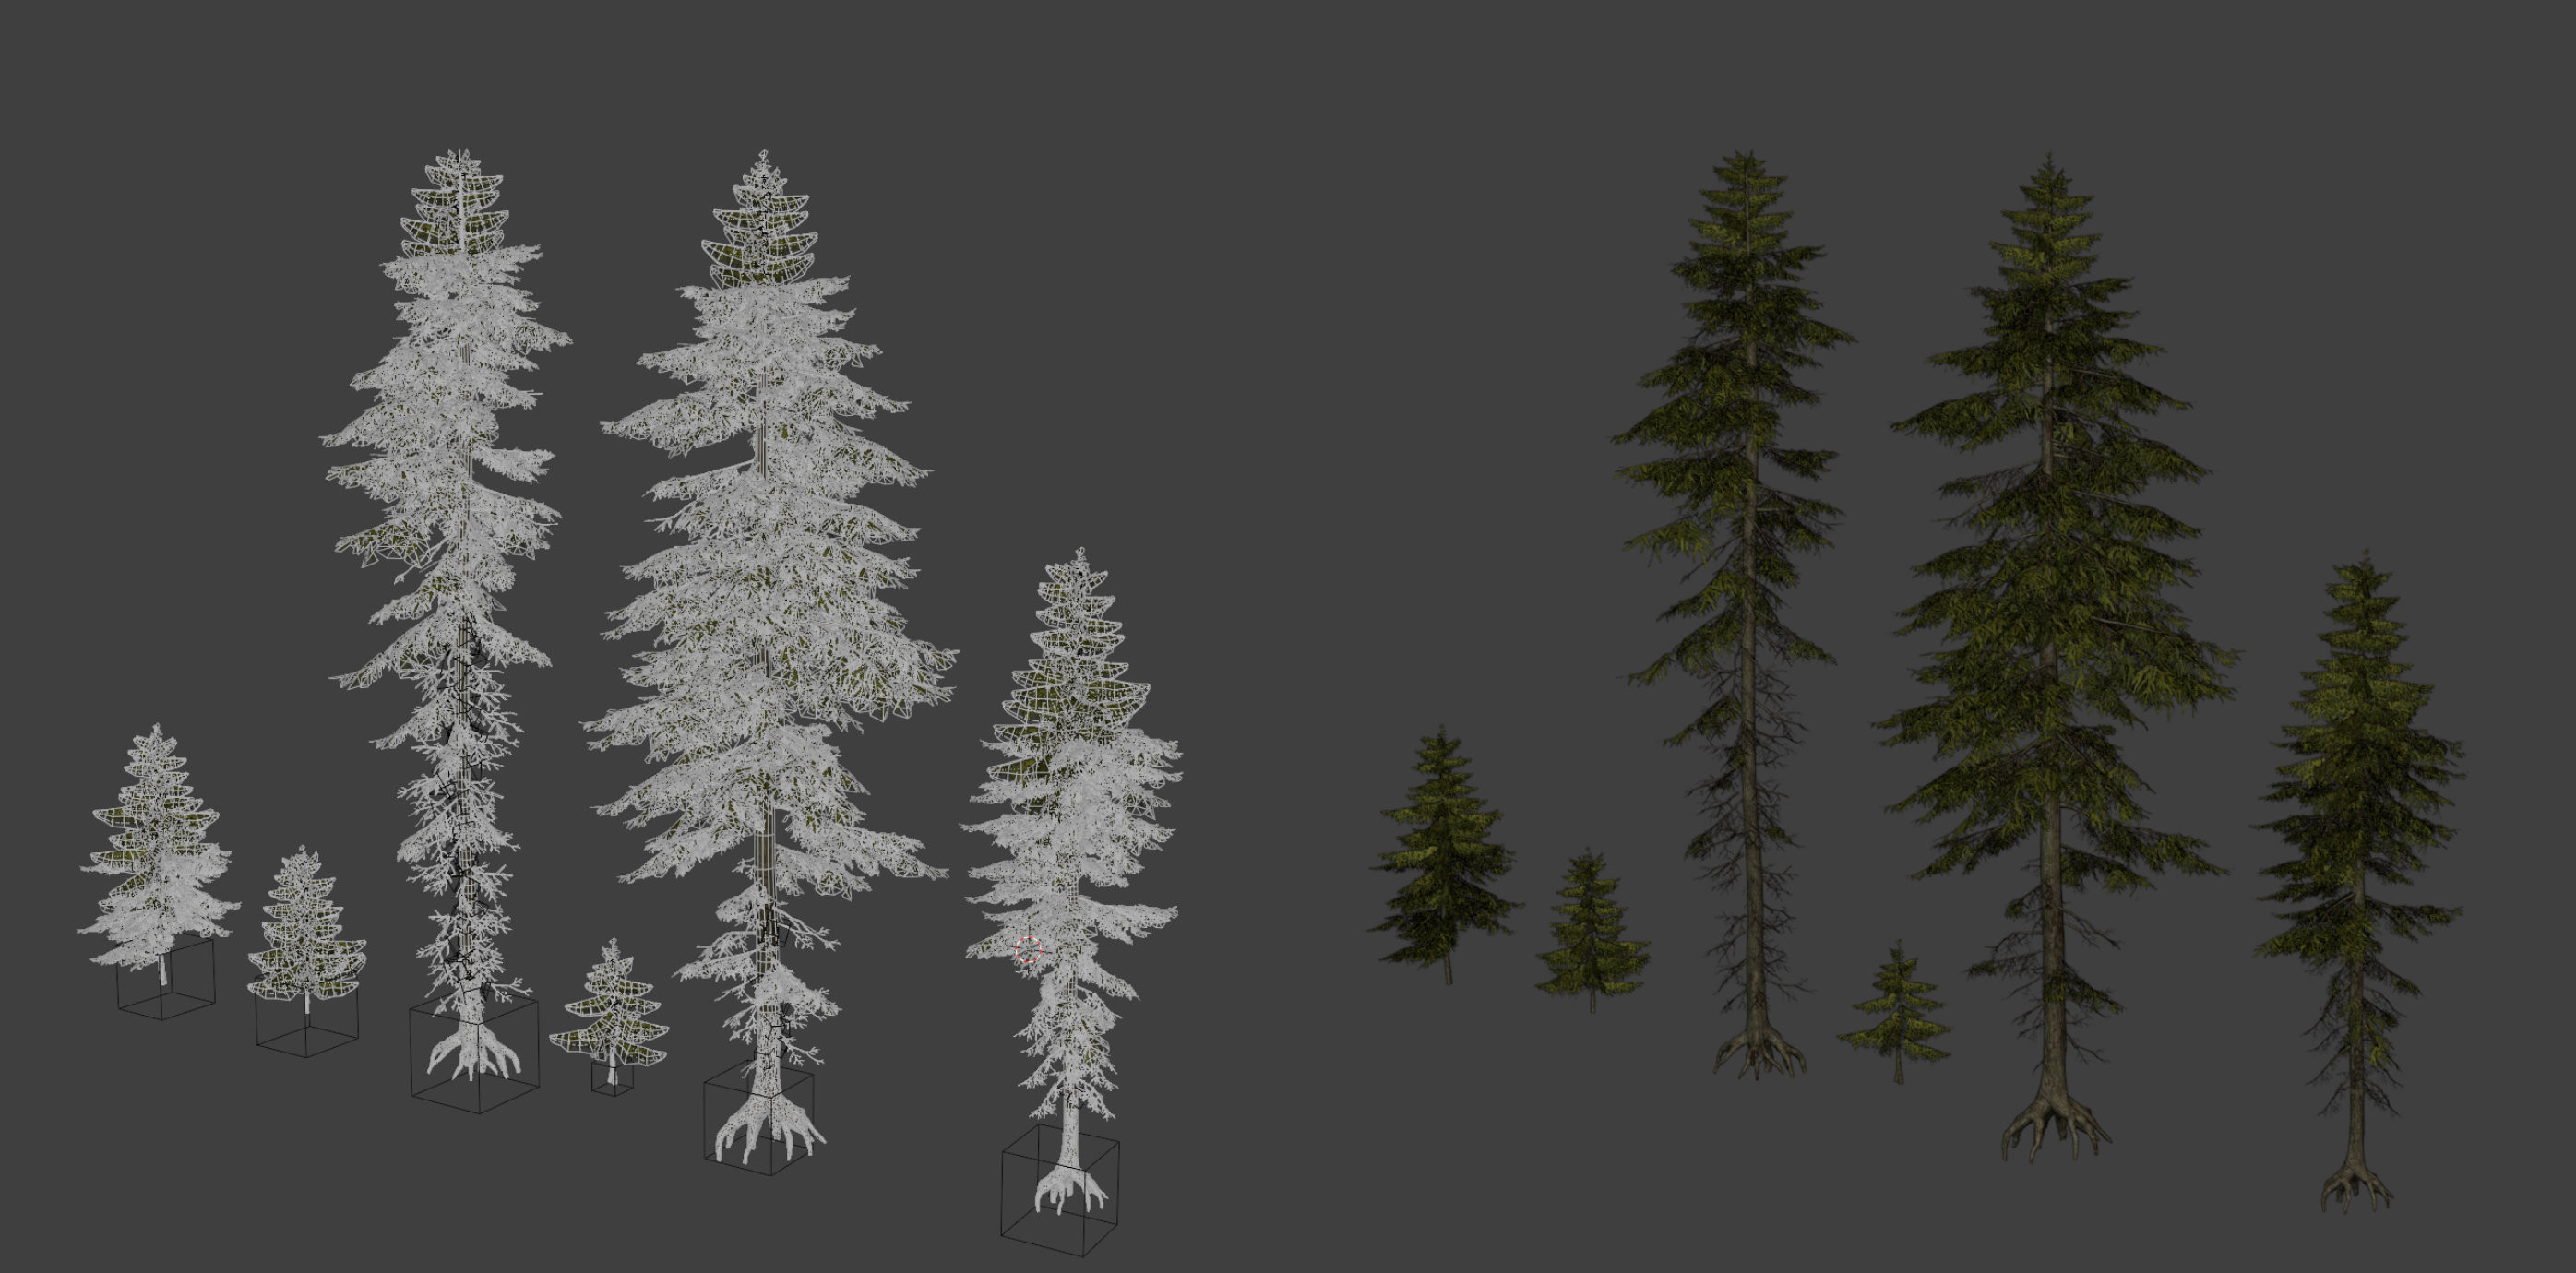 Trees: assembled